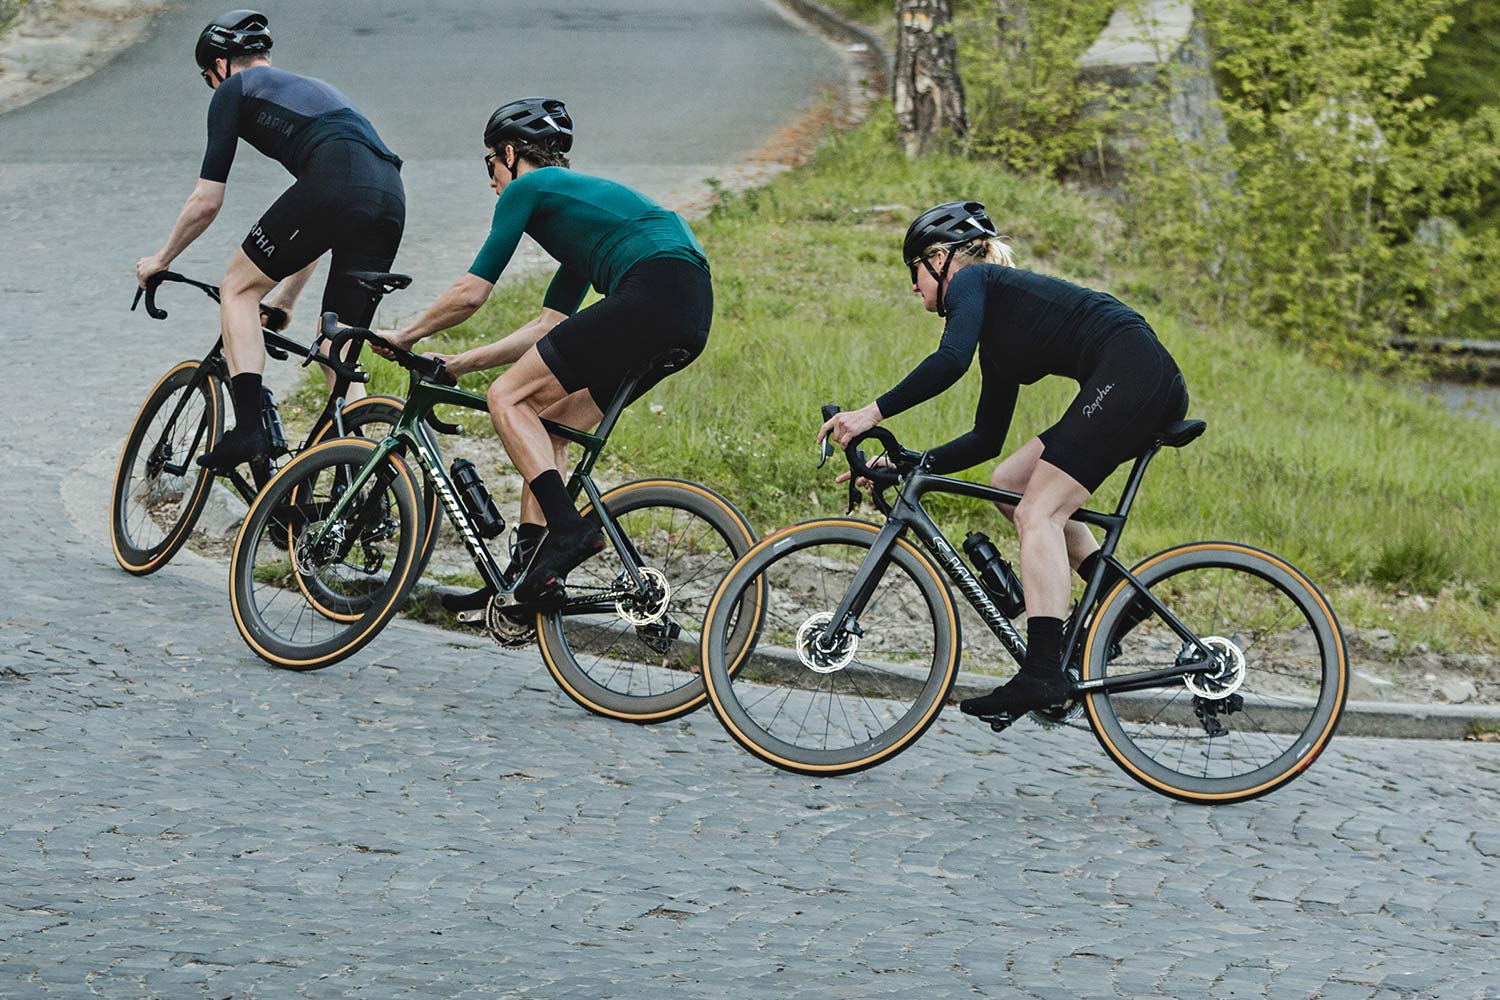 regeling Uitgraving tekort Scope Sport tubeless carbon rim or disc wheels under 1000€ - Bikerumor